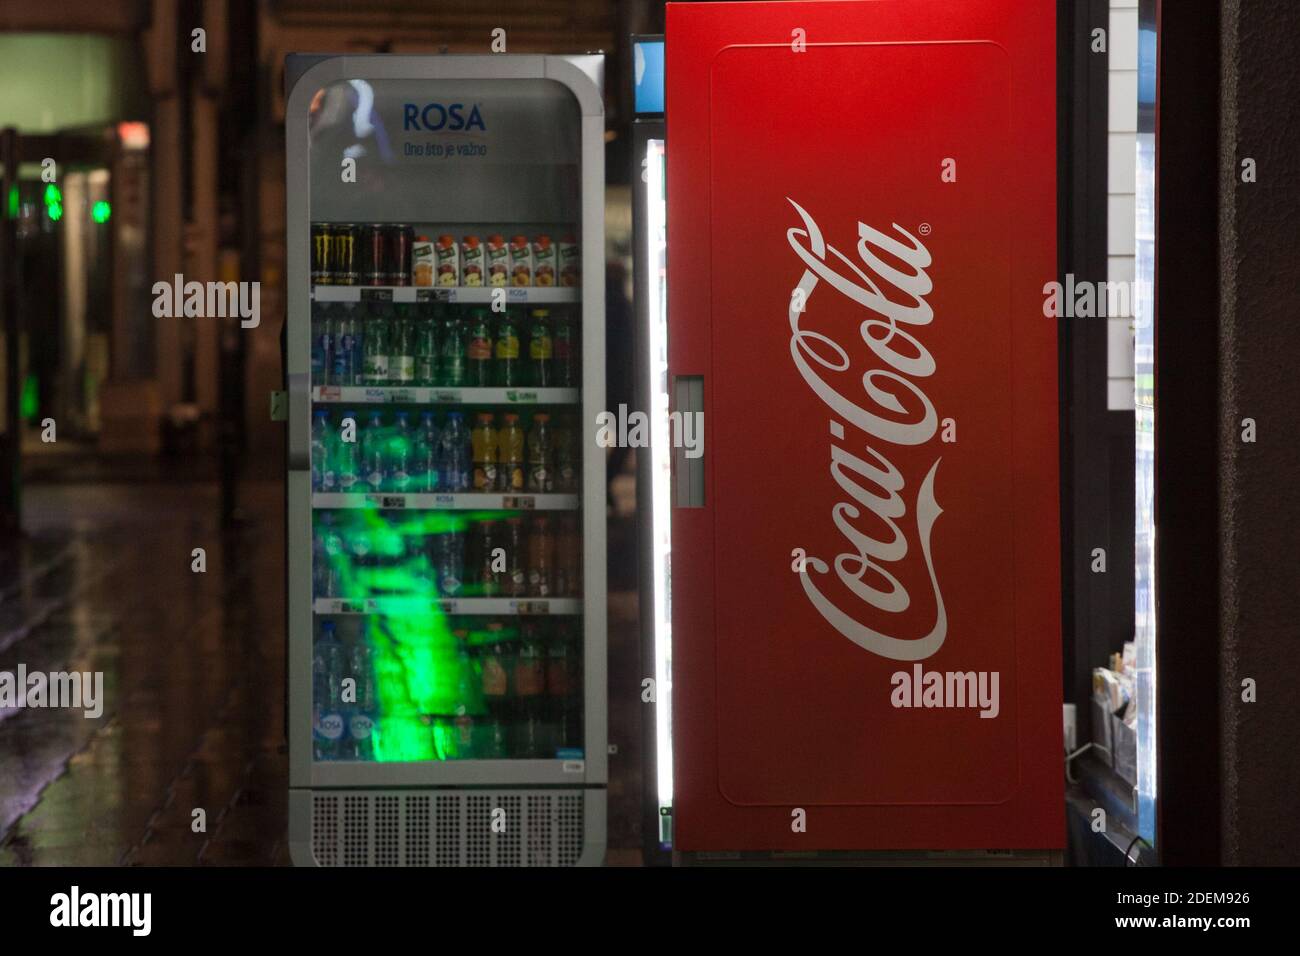 BELGRADO, SERBIA - 3 FEBBRAIO 2019: Logo Coca Cola su un frigorifero appartenente alla società. Coca Cola è una marca di soda di cola, la più venduta nel worl Foto Stock